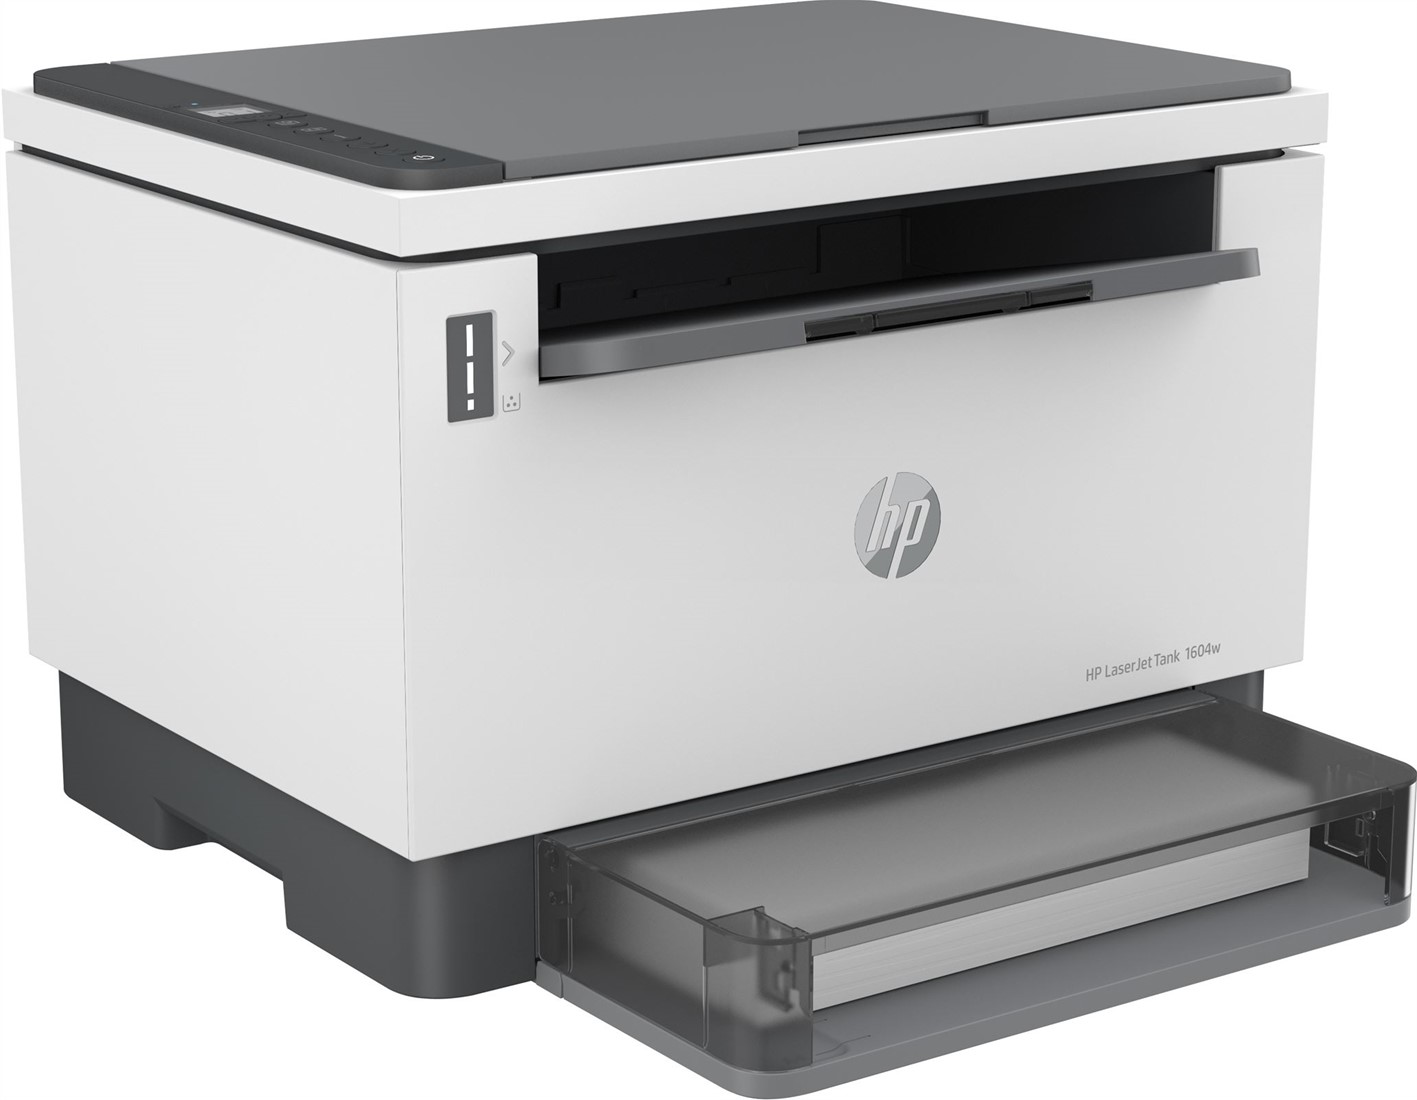 Trots Document Delegatie HP LaserJet Tank MFP 1604w printer, Zwart-wit, Printer voor Bedrijf, Printen,  kopiëren, scannen, Scannen naar e-mail; Scannen naar e-mail/pdf; Scannen  naar PDF; Dual-band Wi-Fi bij ICT-Store.nl